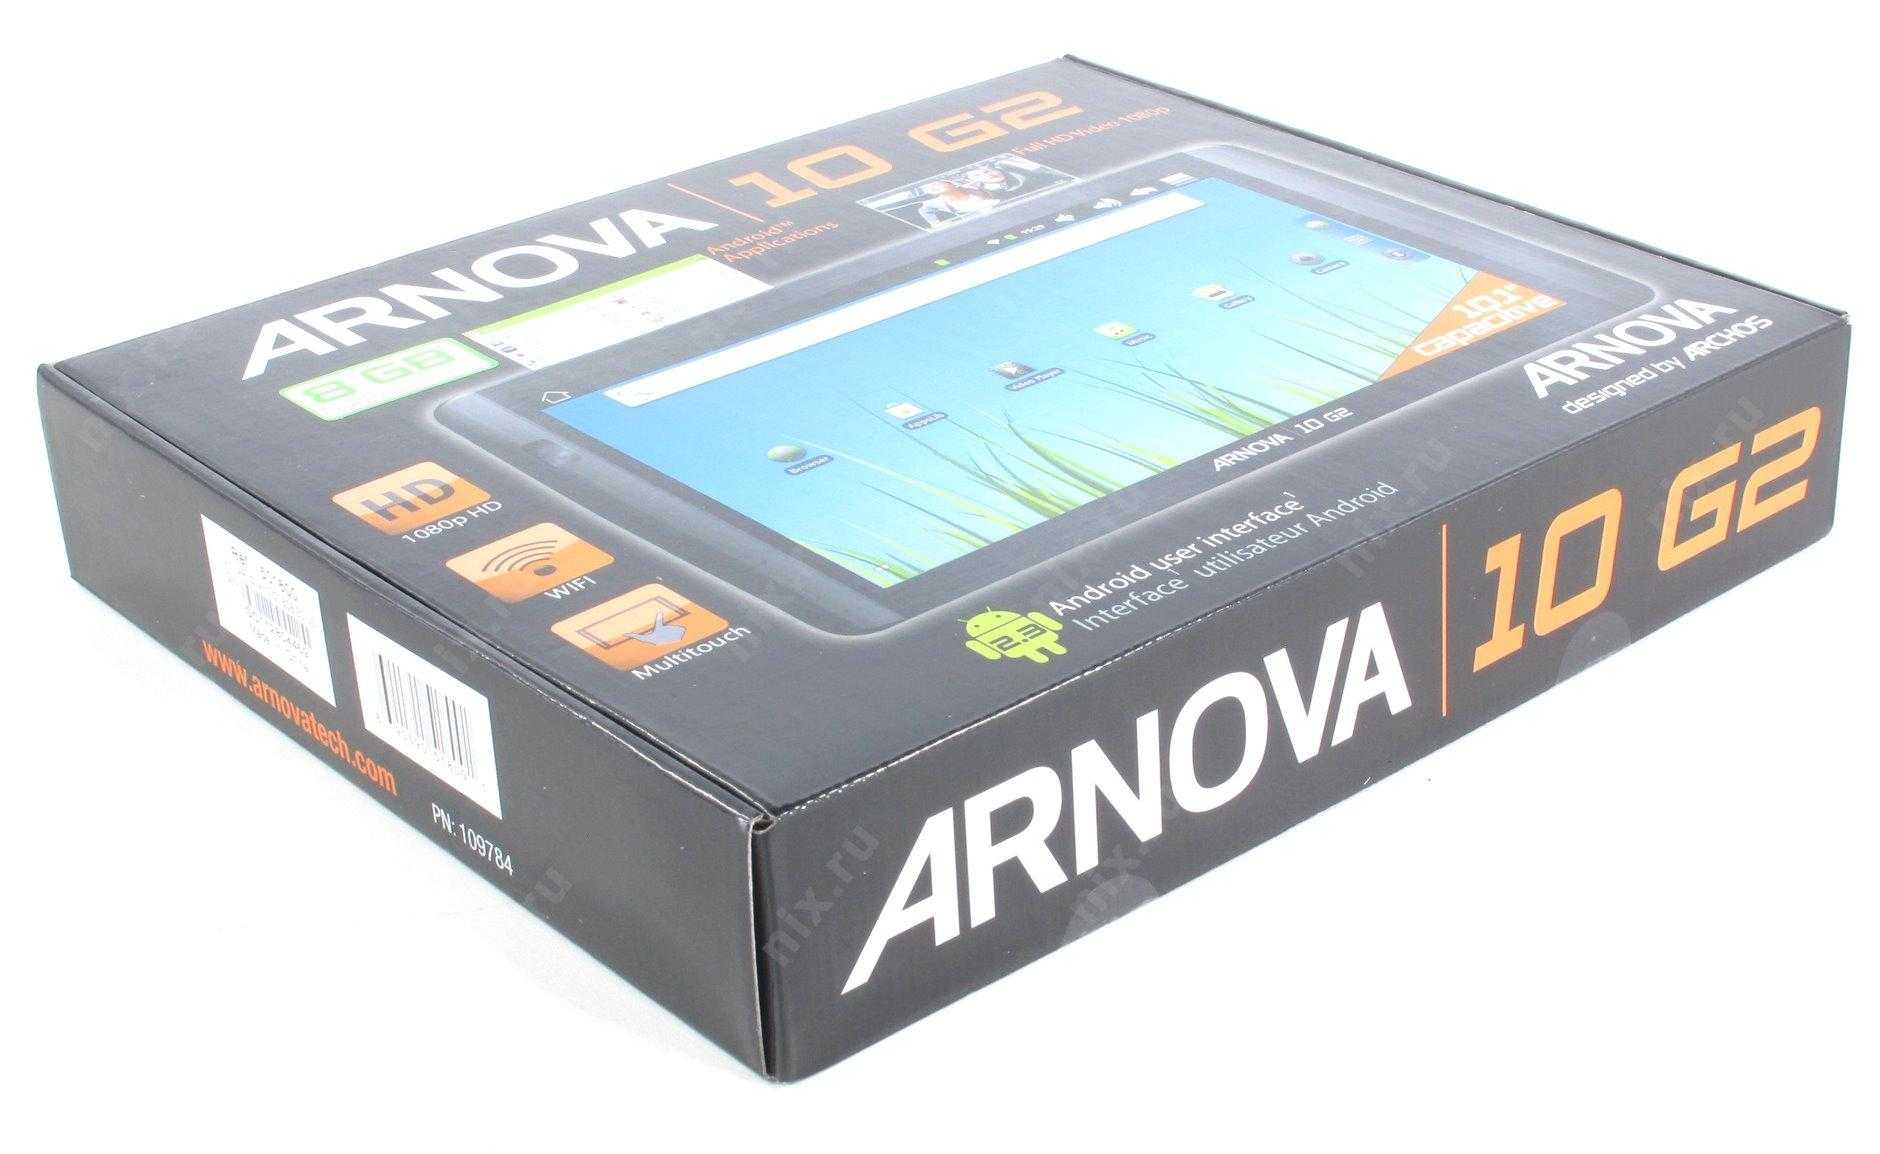 Archos arnova 10 g2 8gb - купить , скидки, цена, отзывы, обзор, характеристики - планшеты